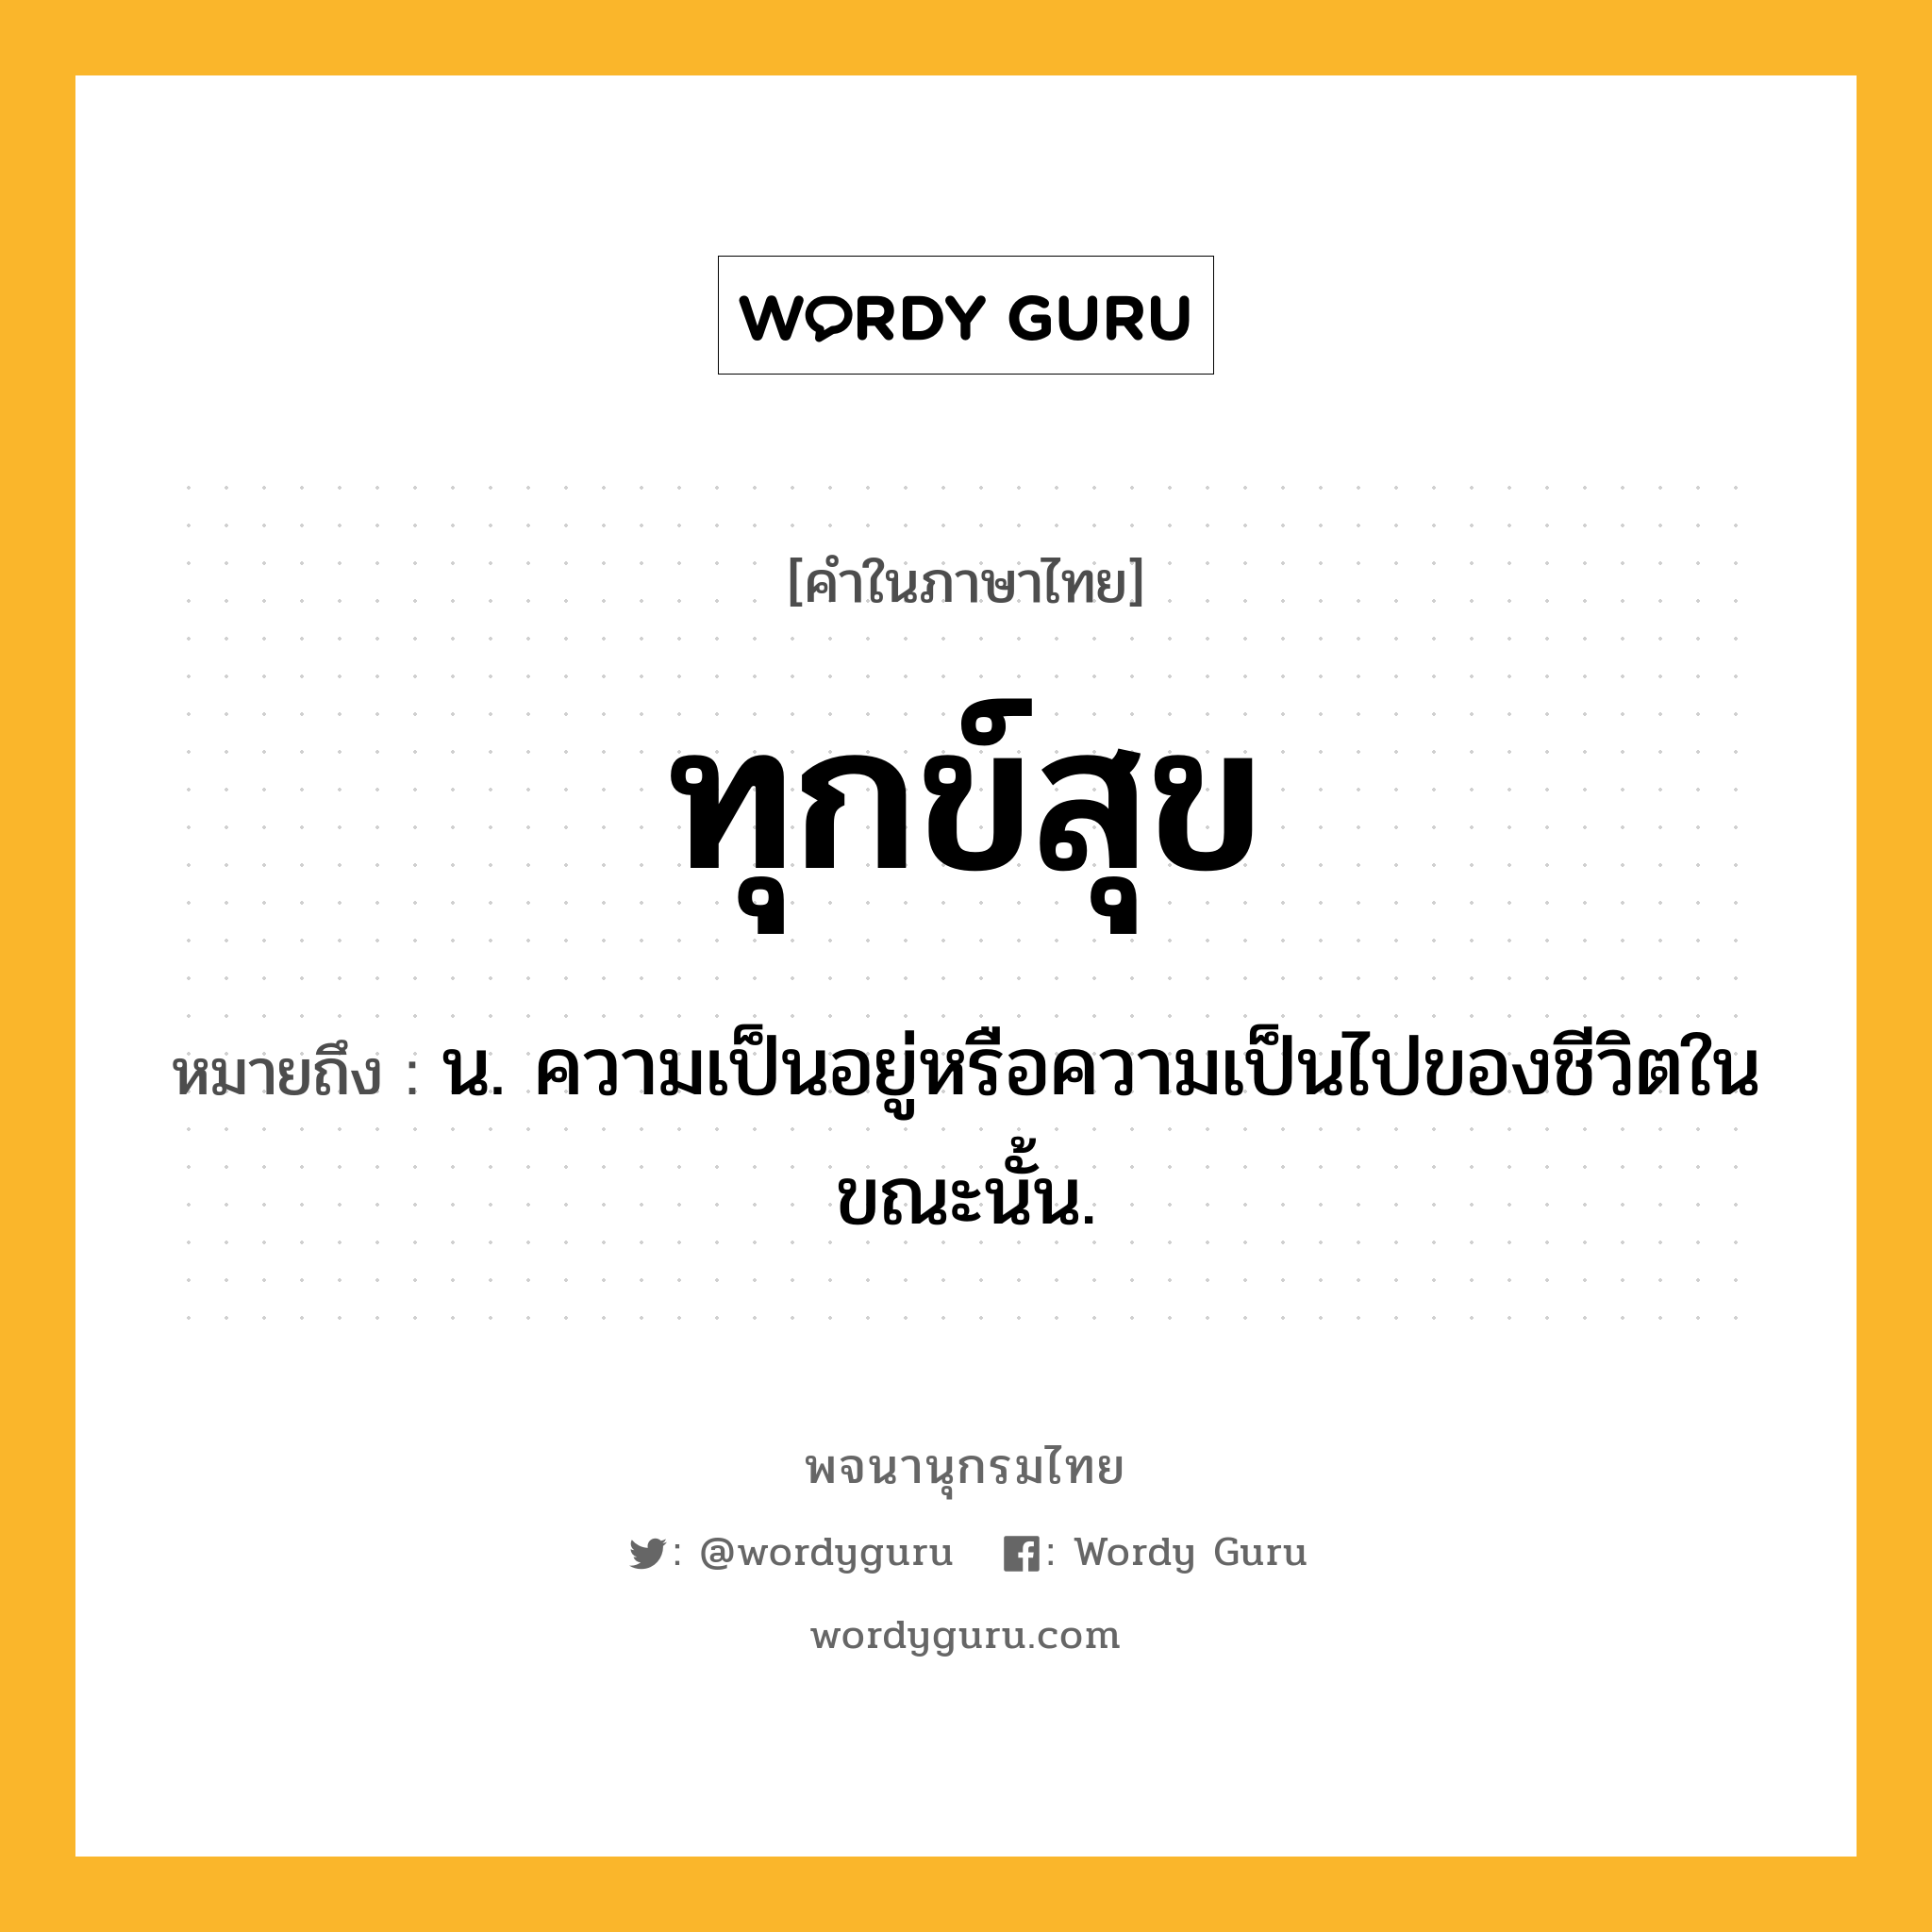 ทุกข์สุข หมายถึงอะไร?, คำในภาษาไทย ทุกข์สุข หมายถึง น. ความเป็นอยู่หรือความเป็นไปของชีวิตในขณะนั้น.